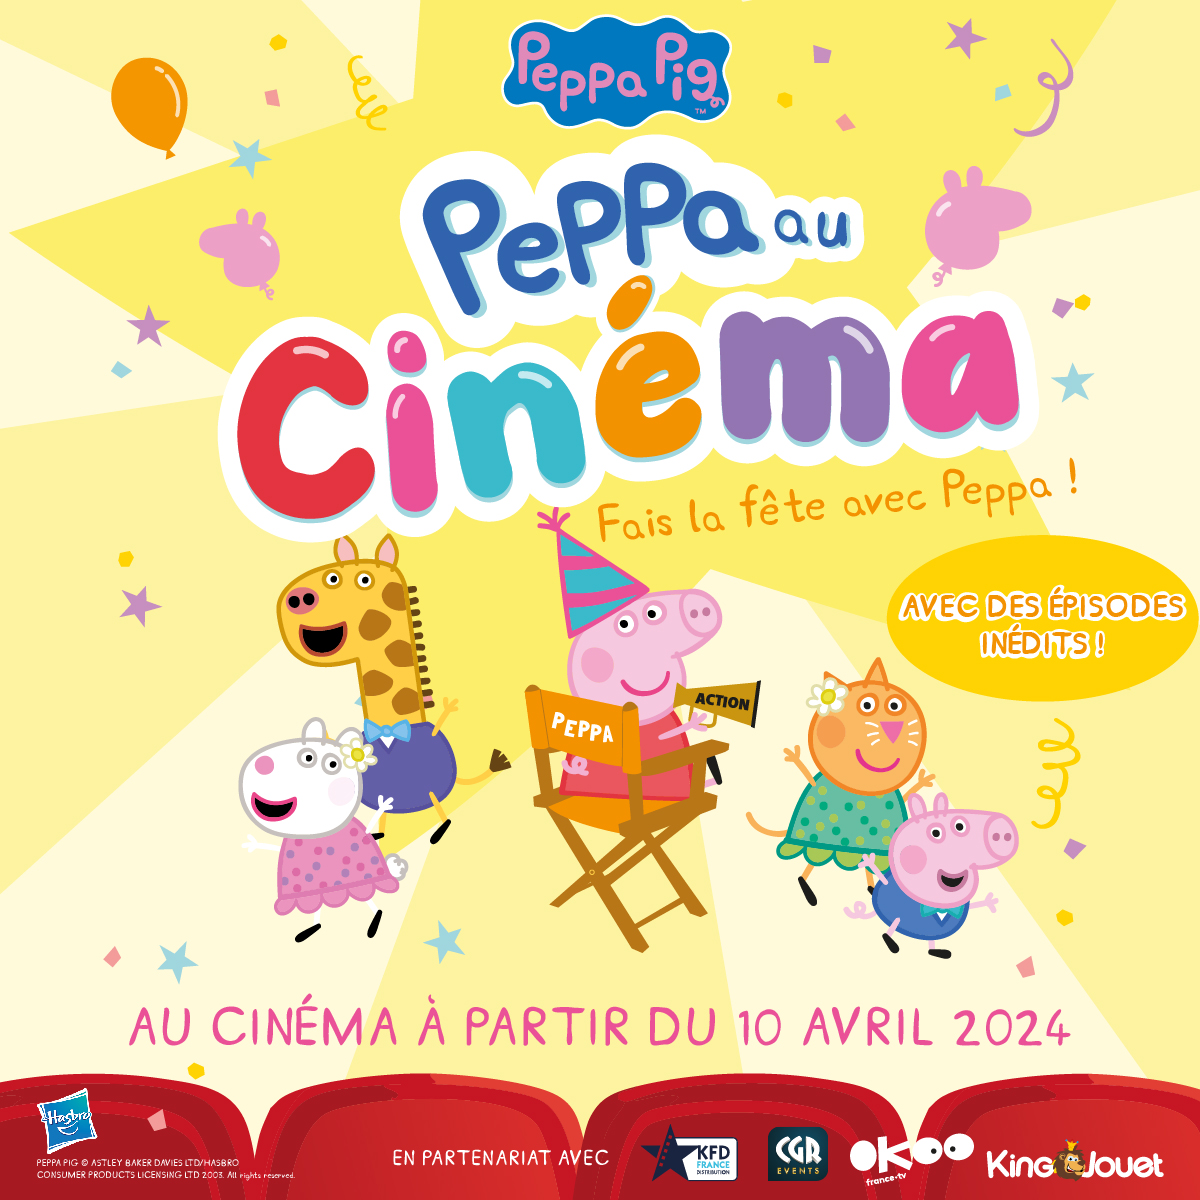 Une nouvelle expérience familiale vous attend dès demain dans votre cinéma avec PEPPA AU CINÉMA. #Peppaaucinéma 🎟️ Cinémas participants & réservations : bit.ly/49Q4scf